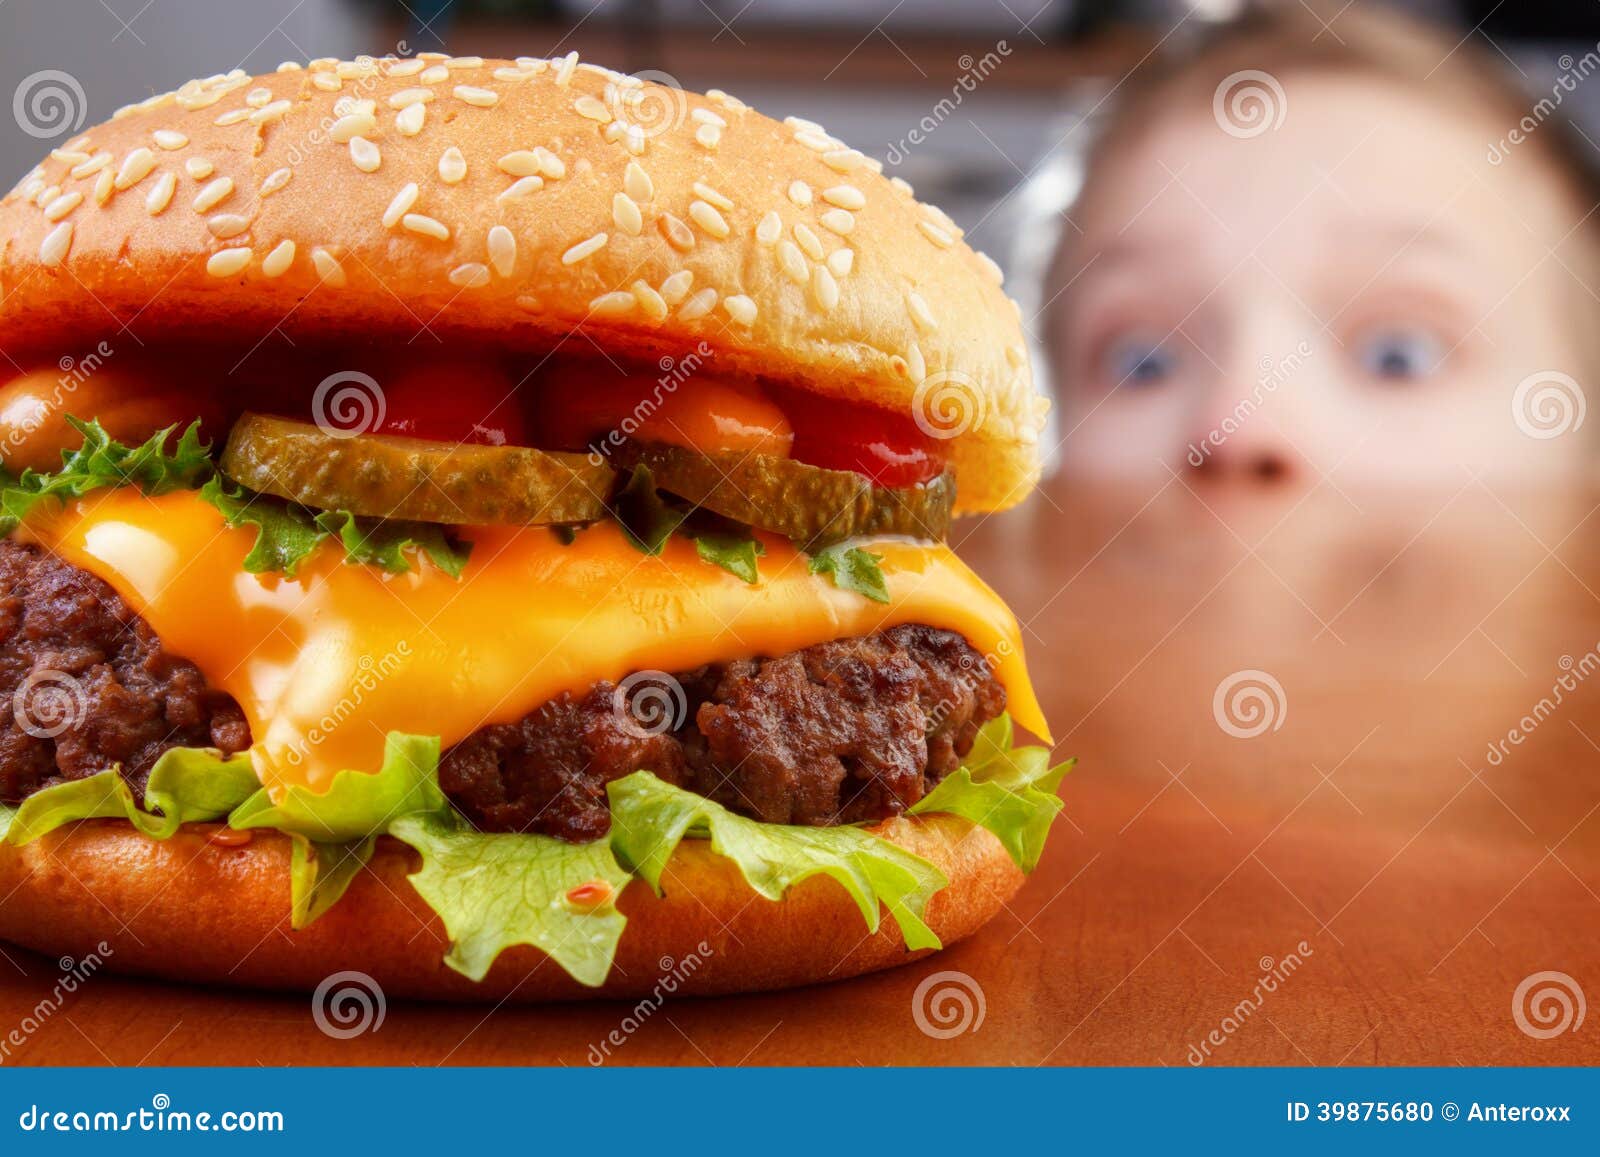 kid and burger